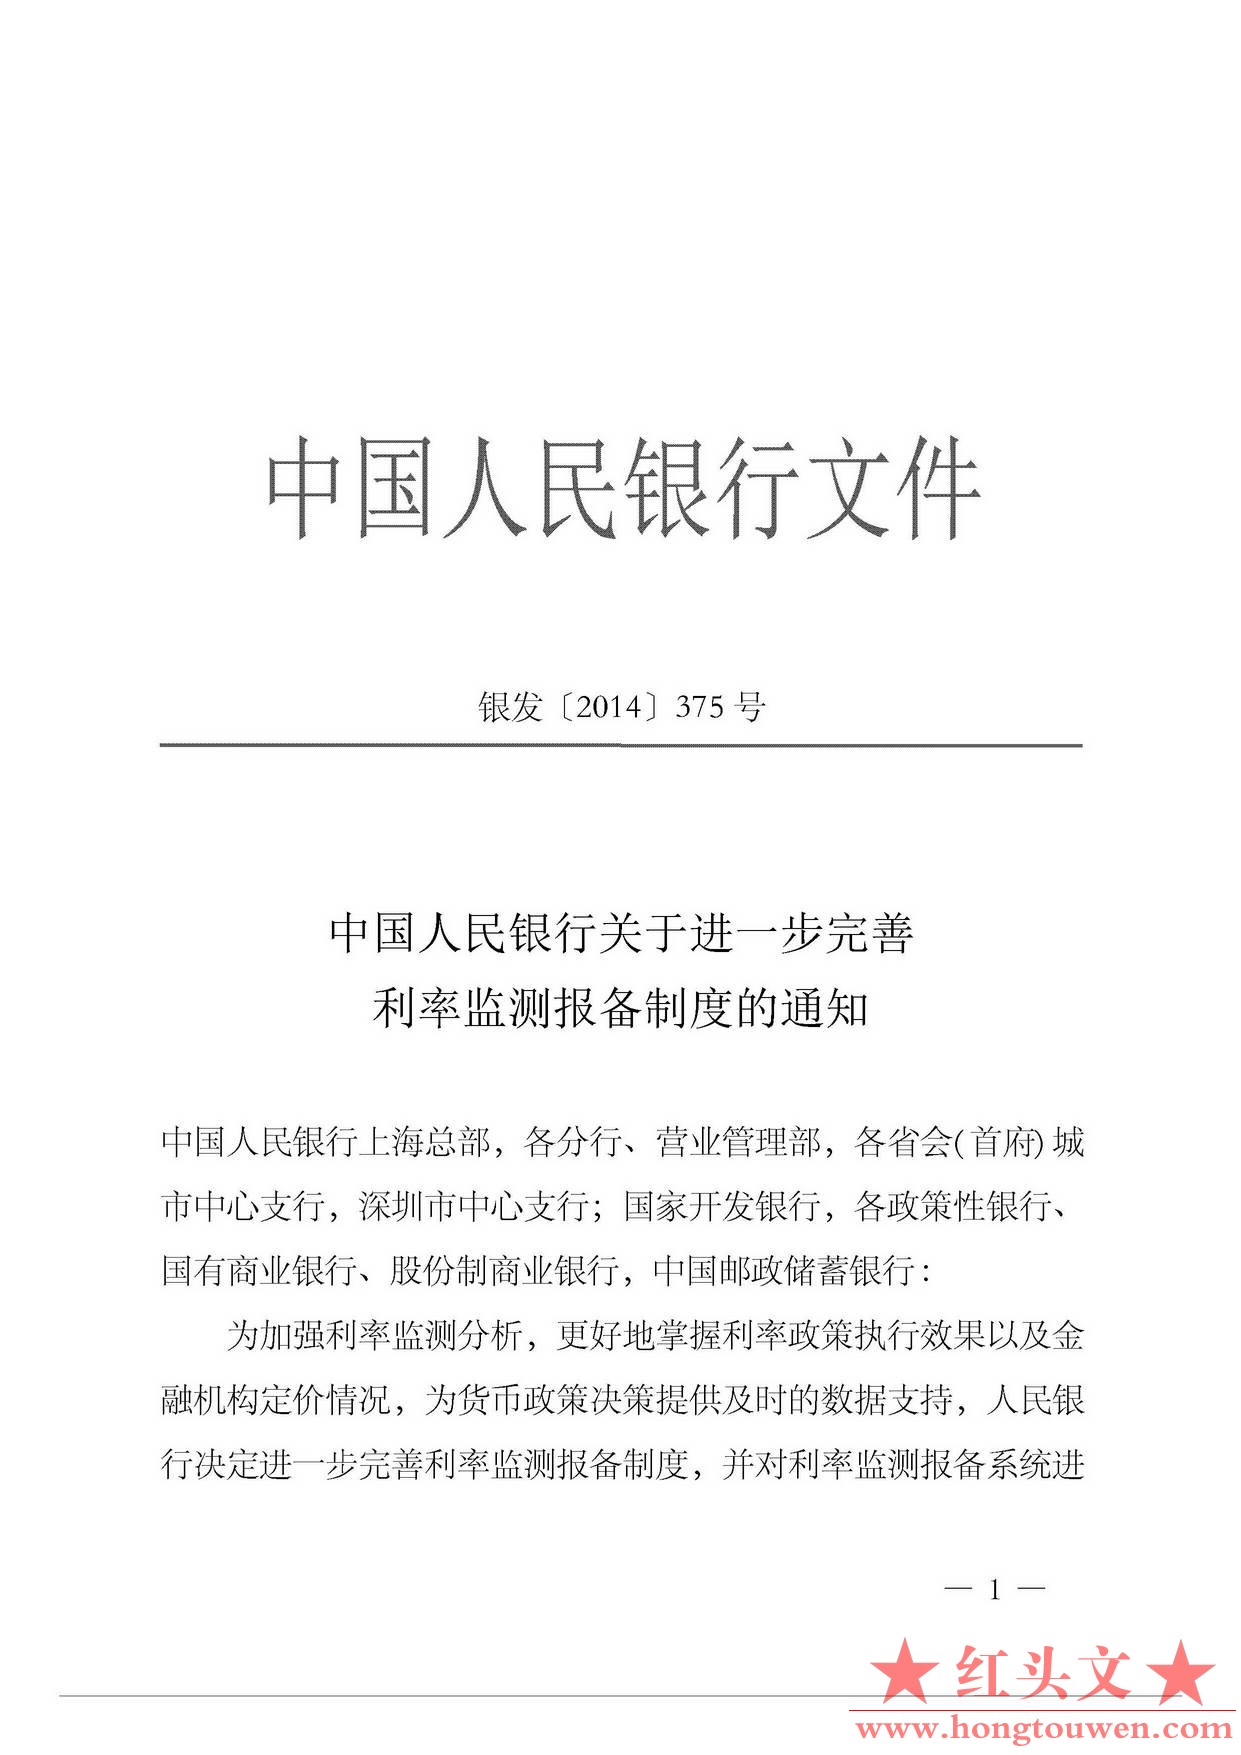 银发[2014]375号-中国人民银行关于进一步完善利率监测报备制度的通知_页面_1.jpg.jpg